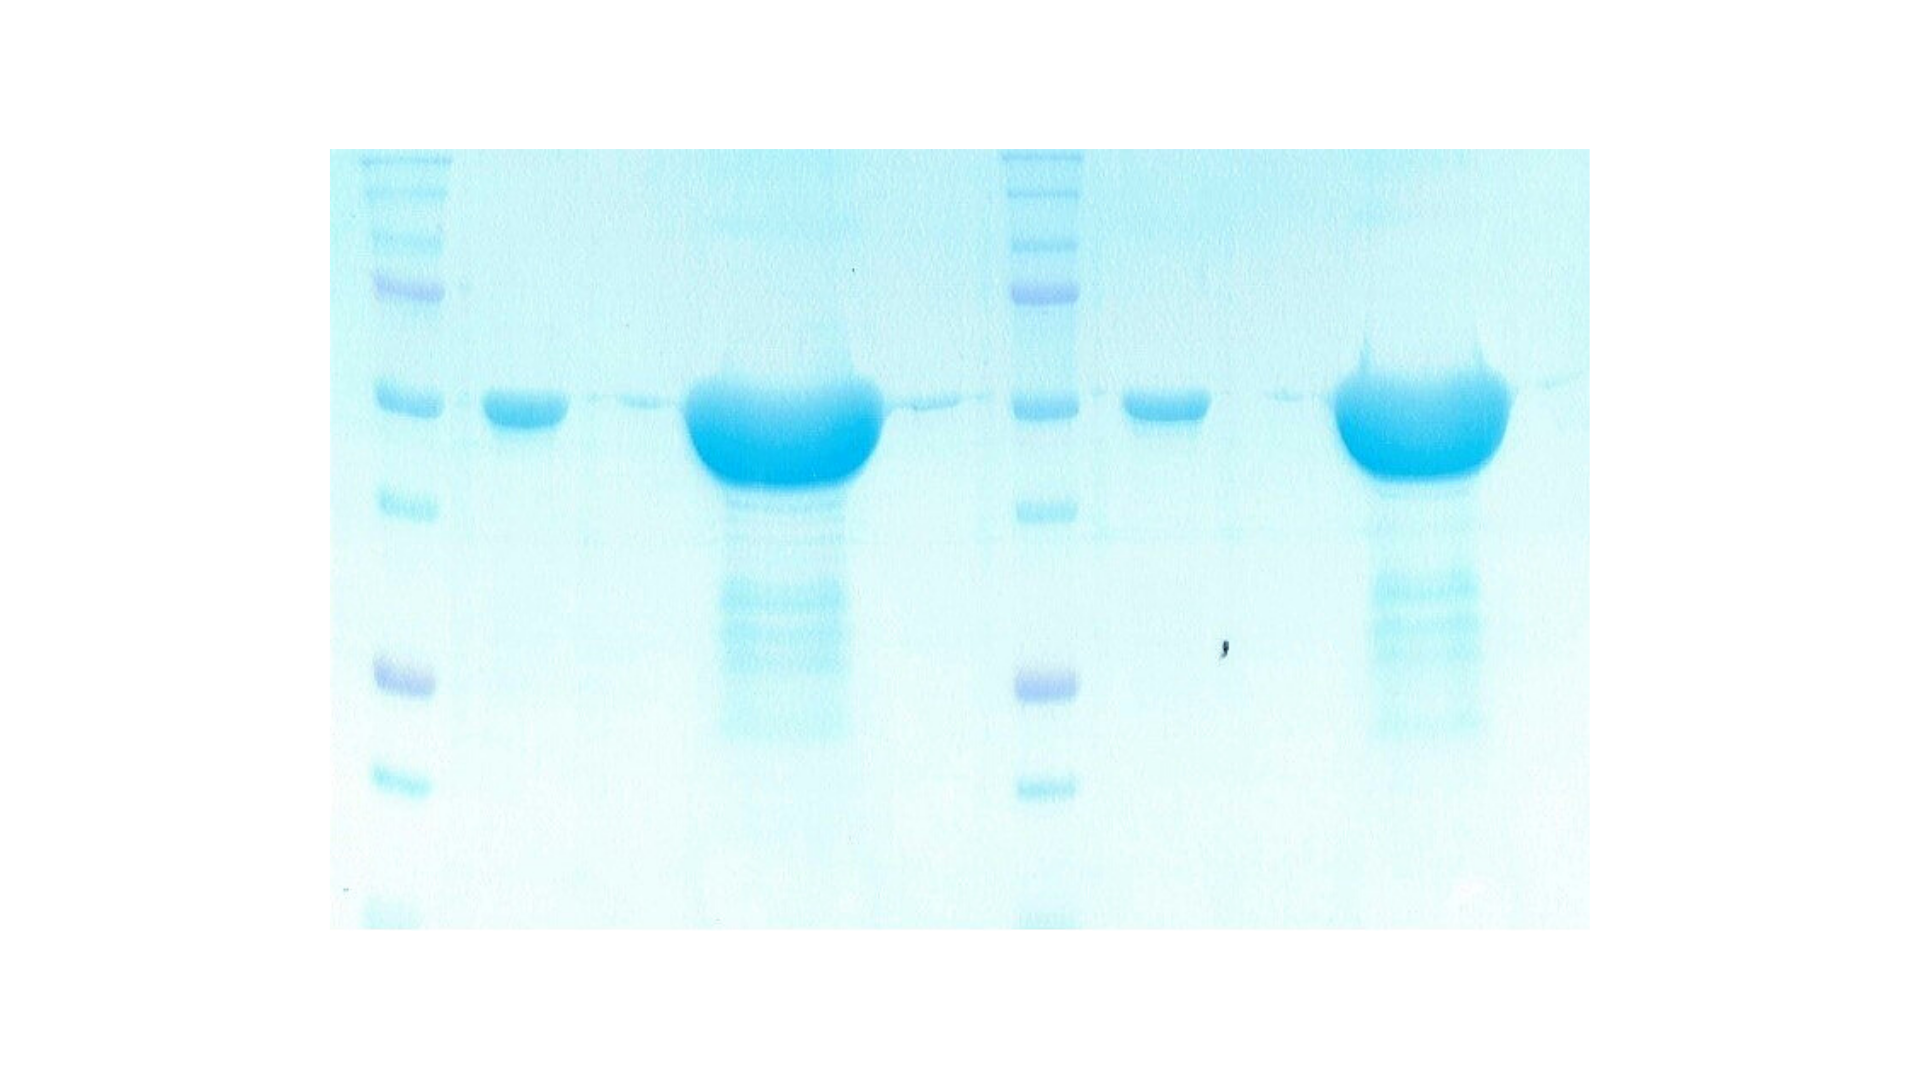 SARS-CoV-2 N белок разделен на 12.5% ПААГ ДСН в восстанавливающих и невосстанавливающих условиях. 

Гель окрашен с использованием красителя “Instant Blue Coomassie Protein Stain” с чувствительностью 5 нг на дорожку. 

Количество загруженного белка - 2 мкг и 40 мкг.

